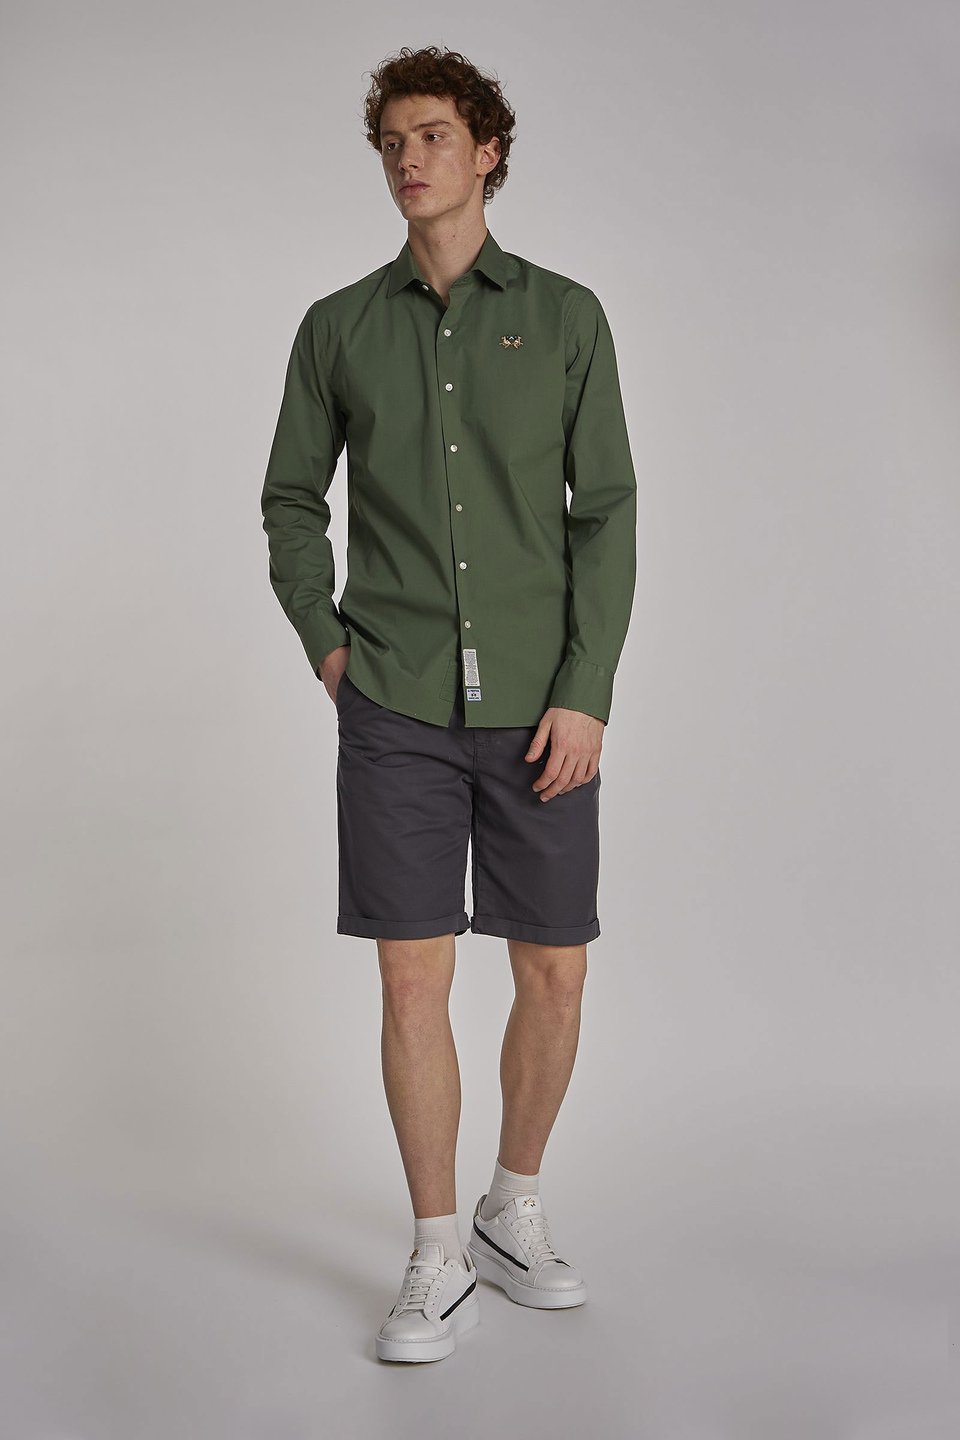 Men's long-sleeved slim-fit shirt | La Martina - Official Online Shop